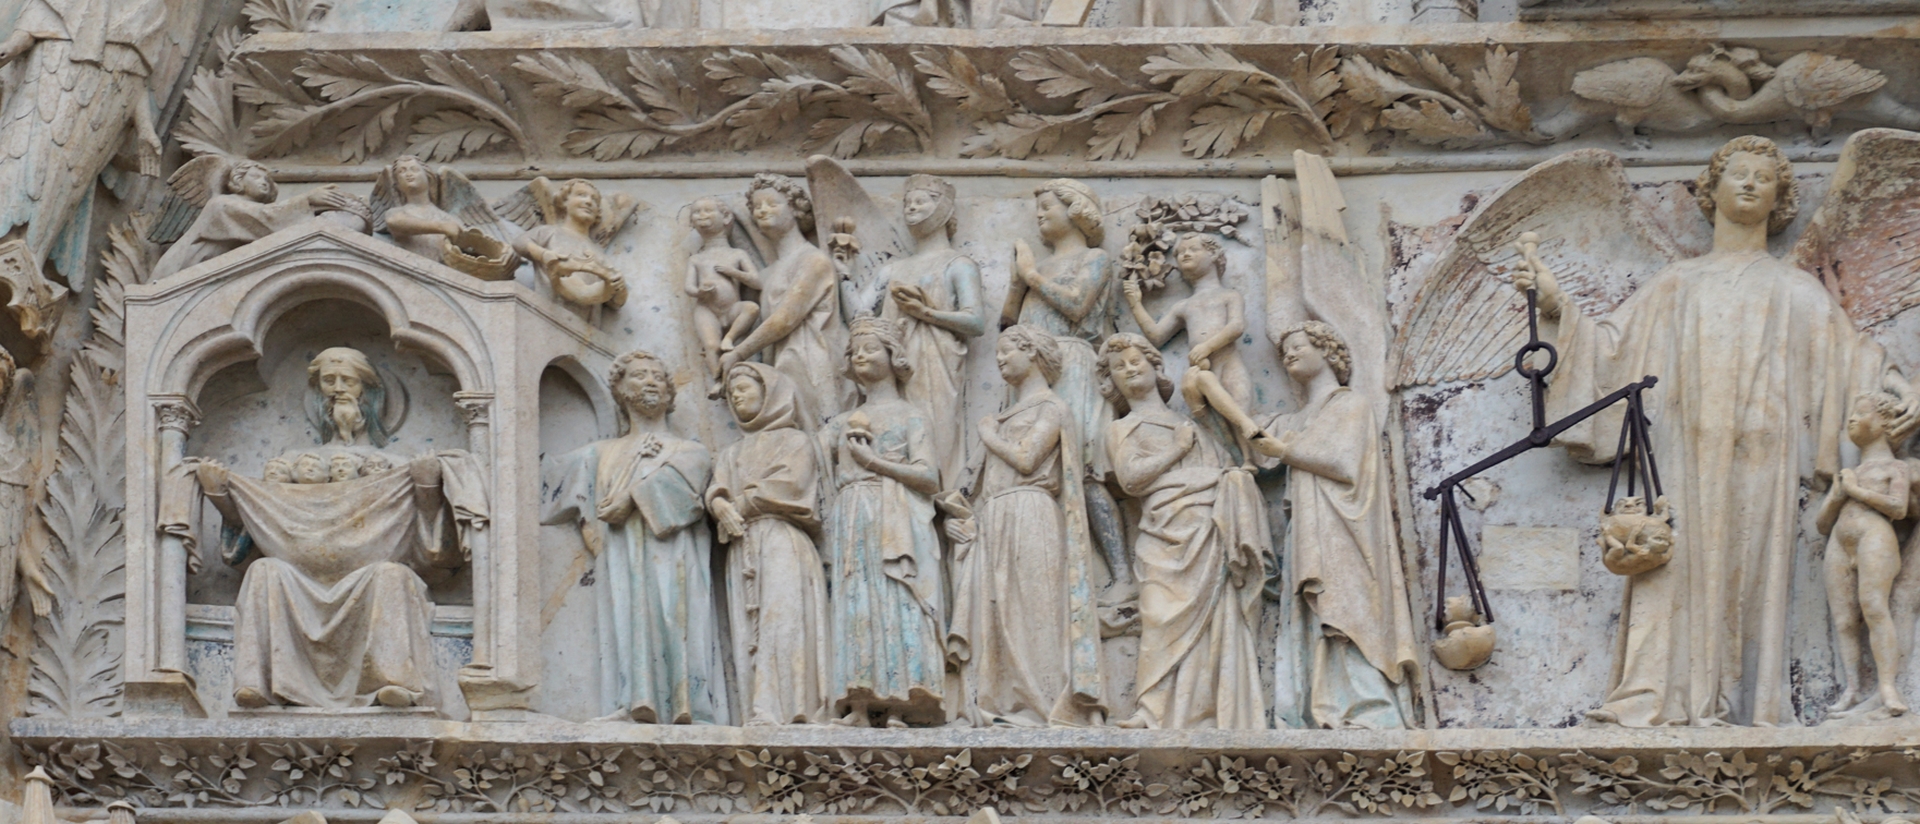 La cohorte des saints rejoint la demeure du Père céleste, portail de la cathédrale de Bourges XIIIe siècle |  © Maurice Page 